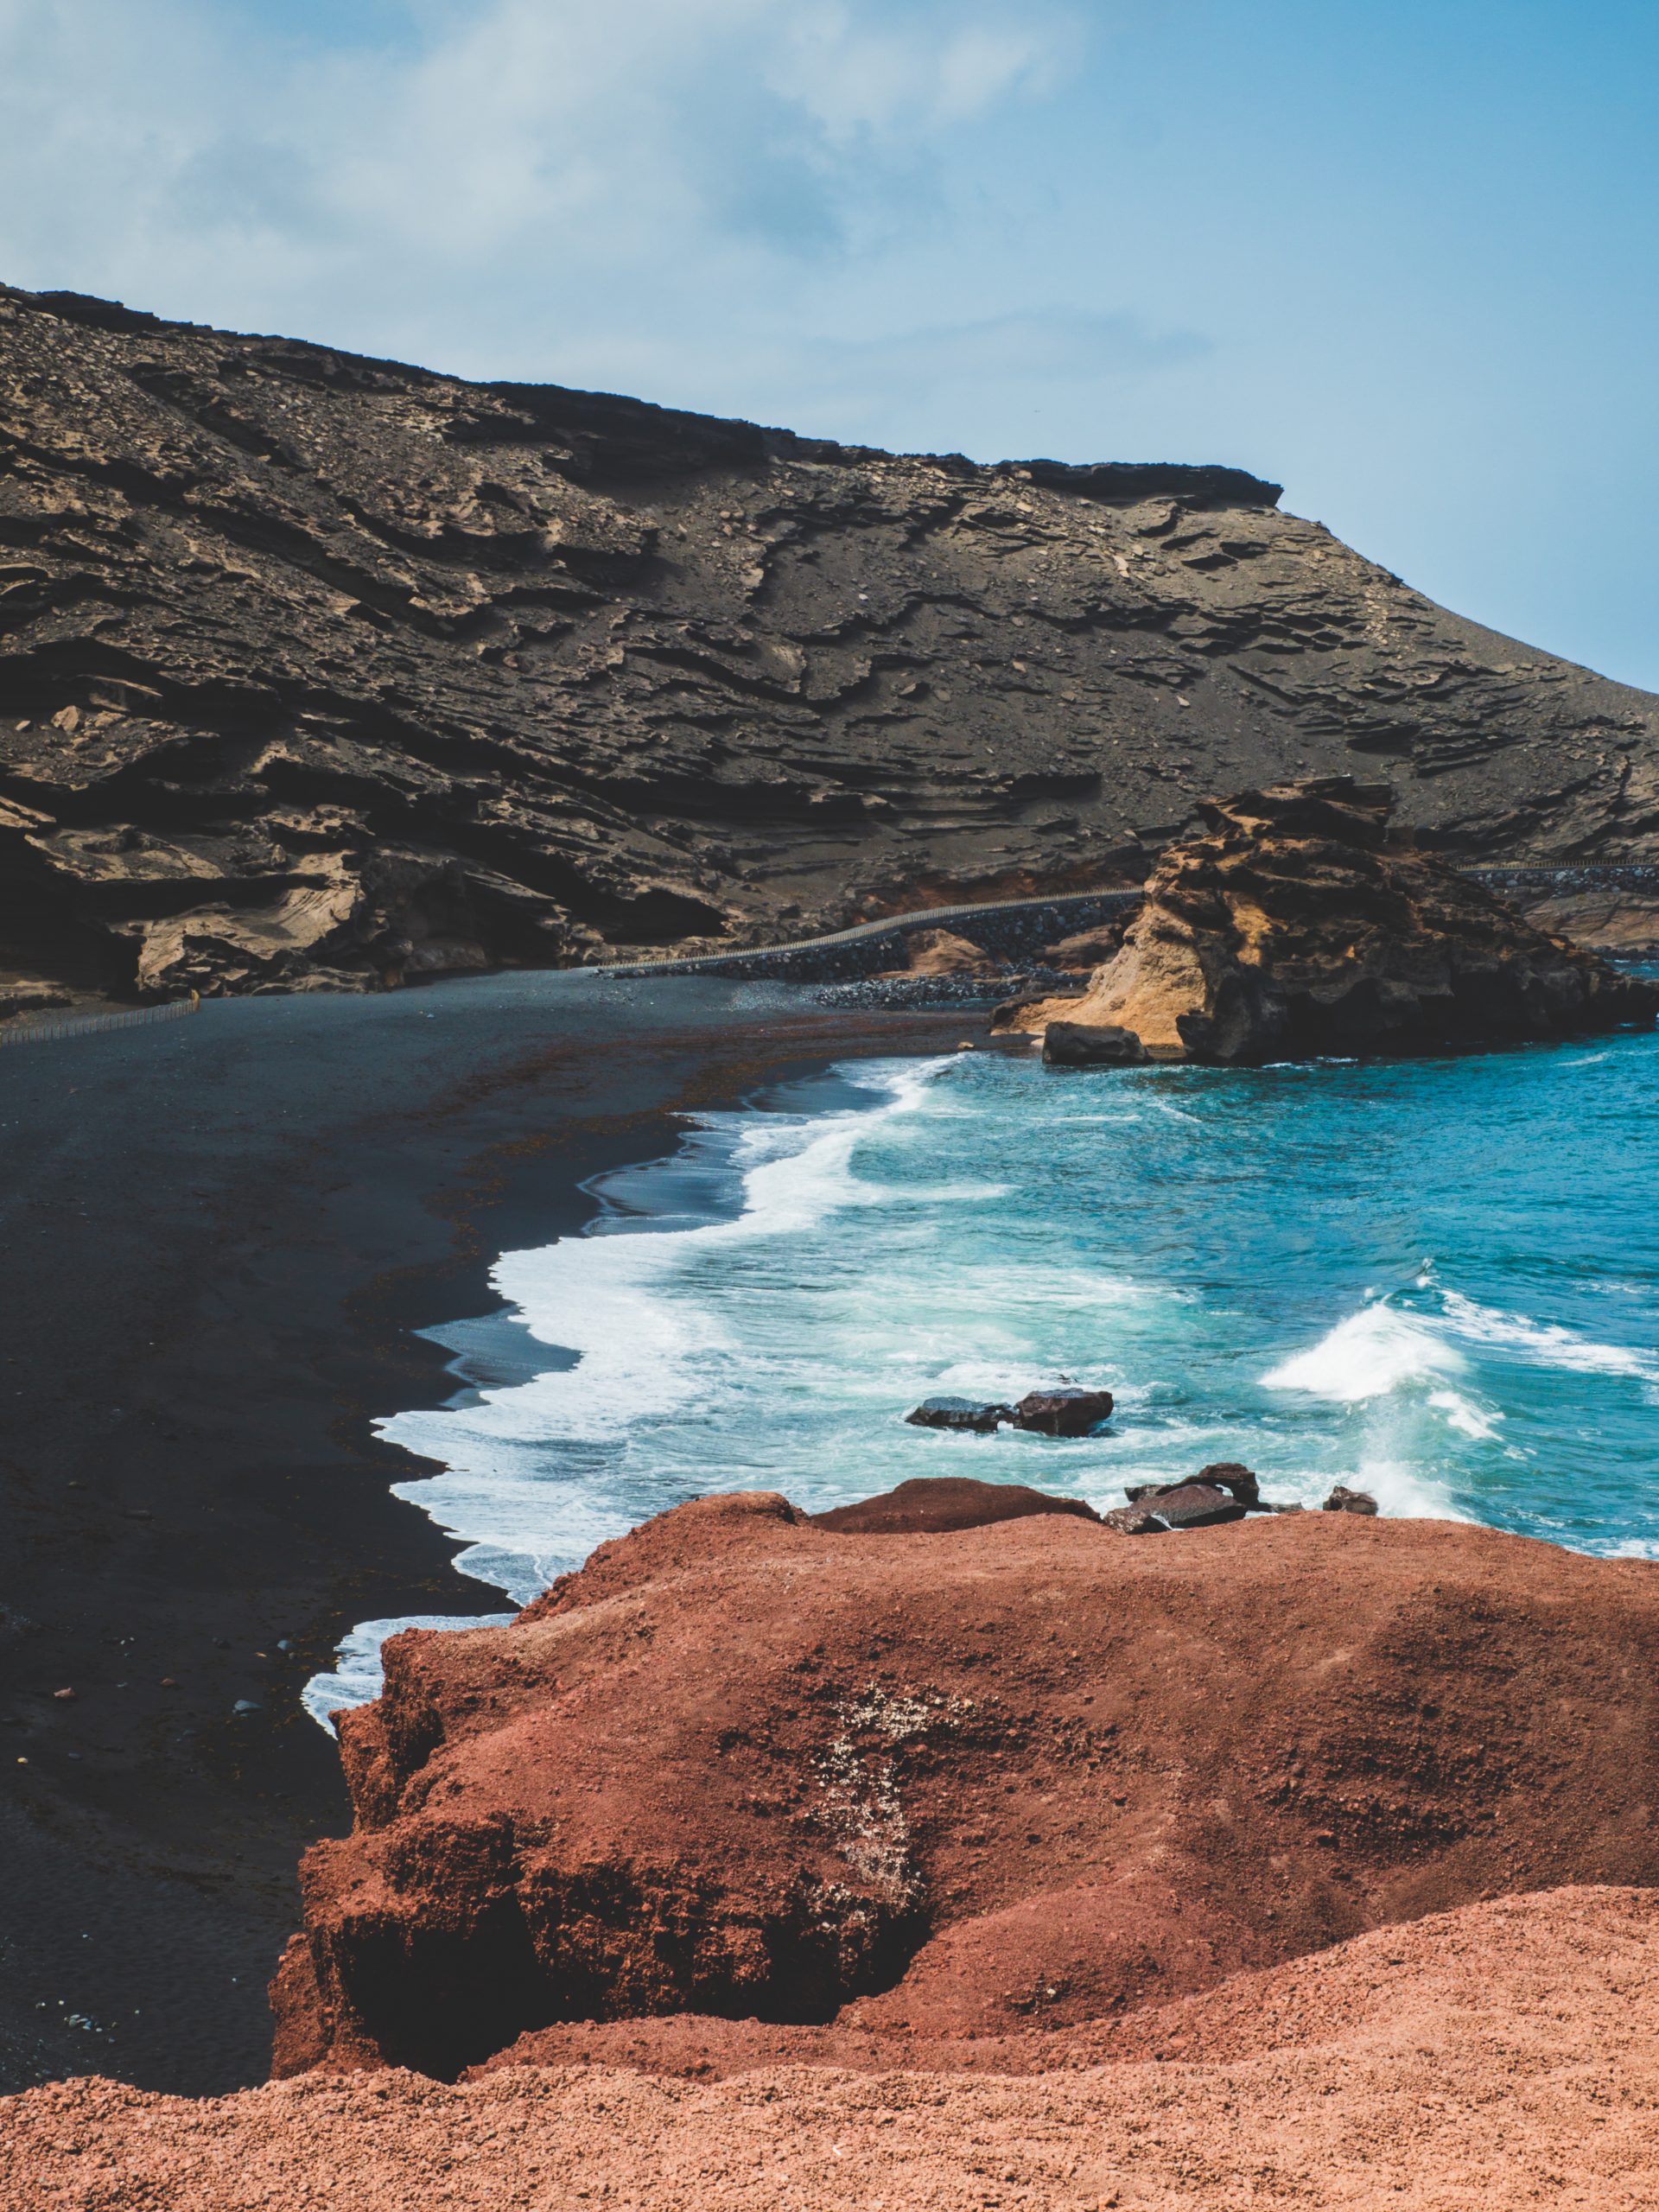 Cette plage de sable noir dispose d'une eau turquoise.